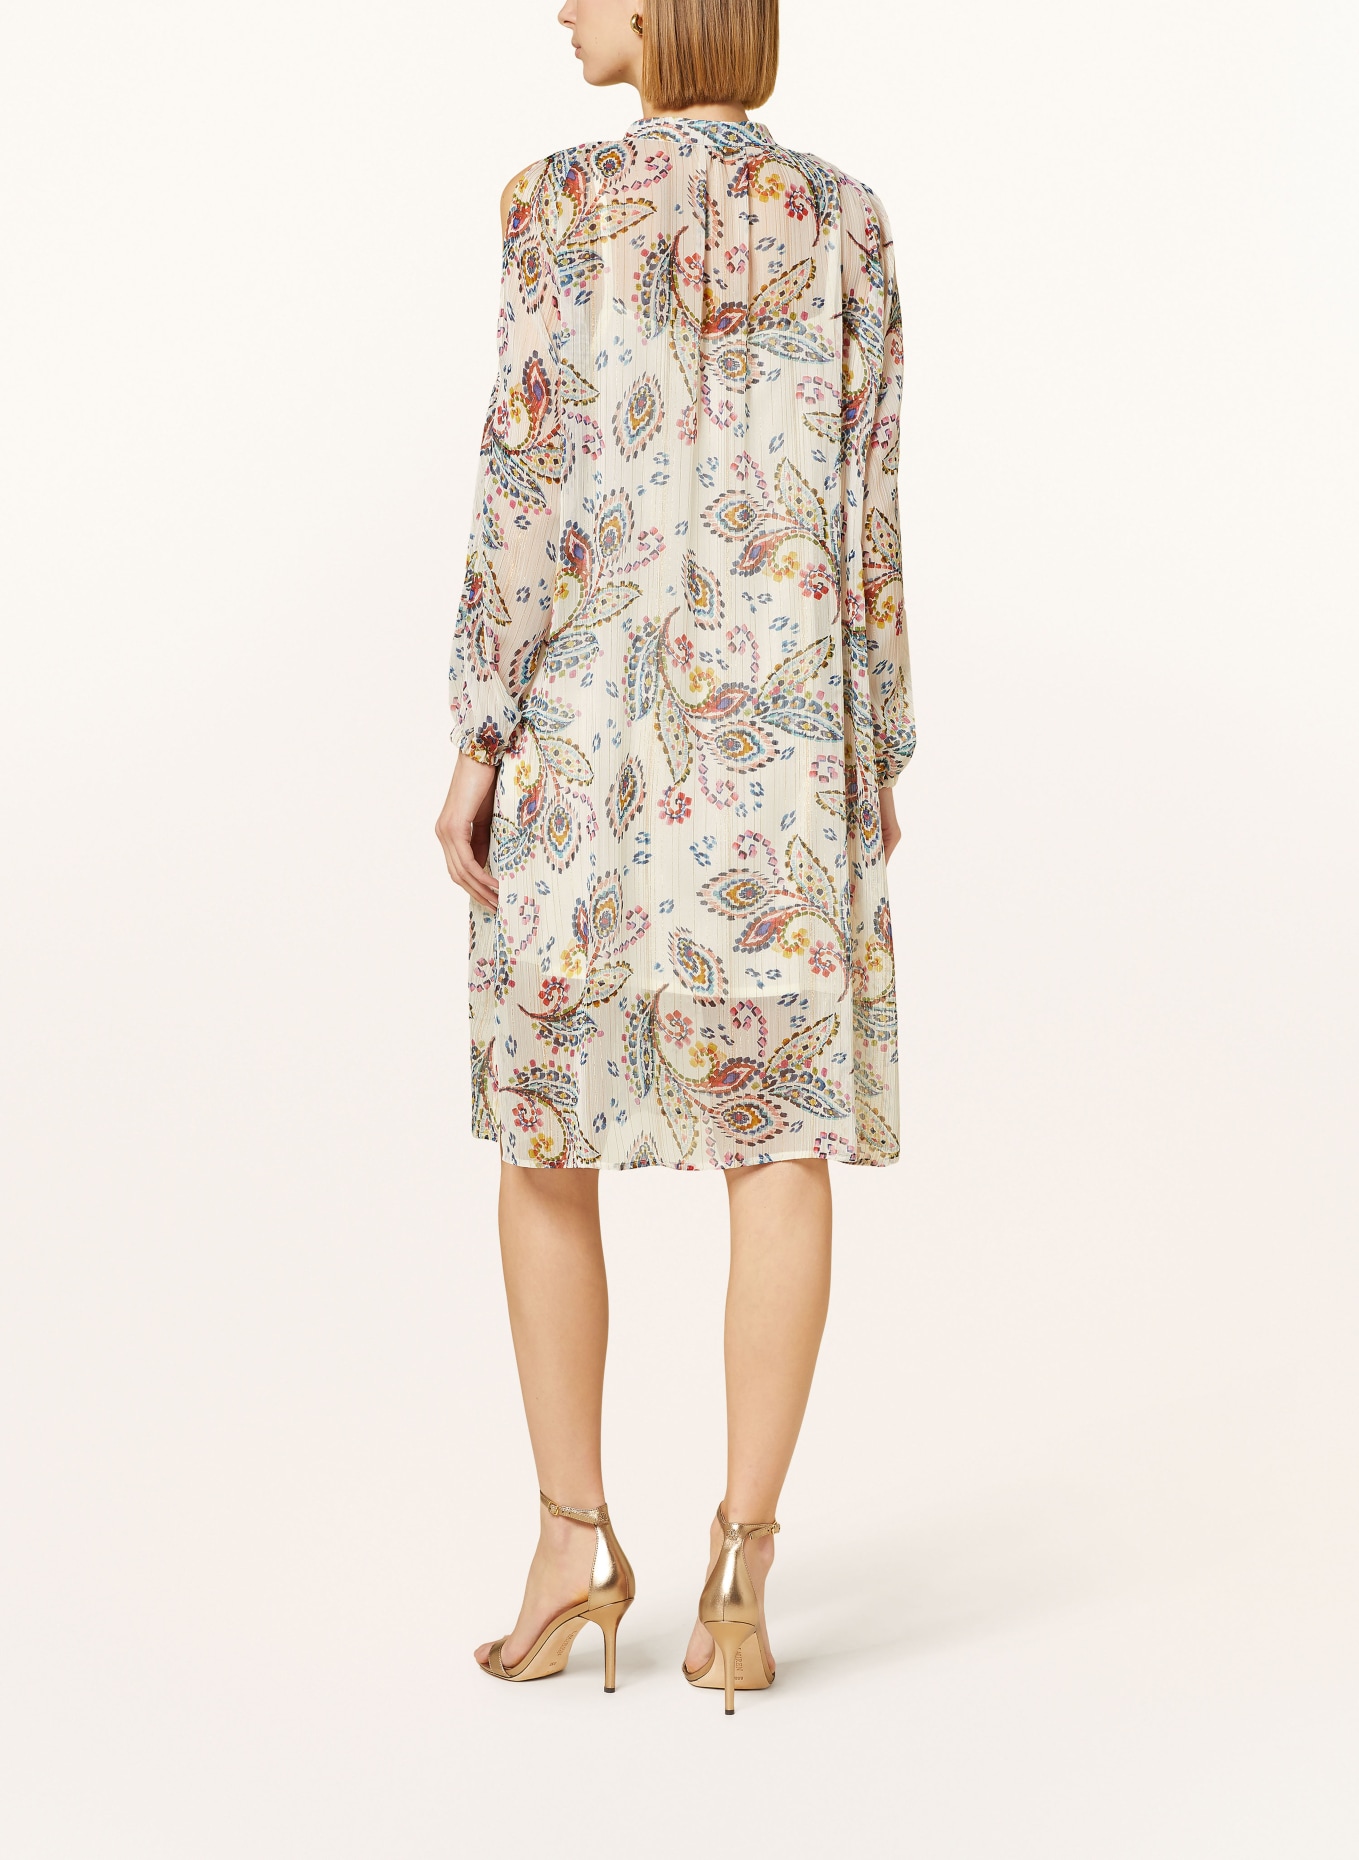 RIANI Cold-Shoulder-Kleid mit Glitzergarn, Farbe: CREME/ BLAU/ PINK (Bild 3)